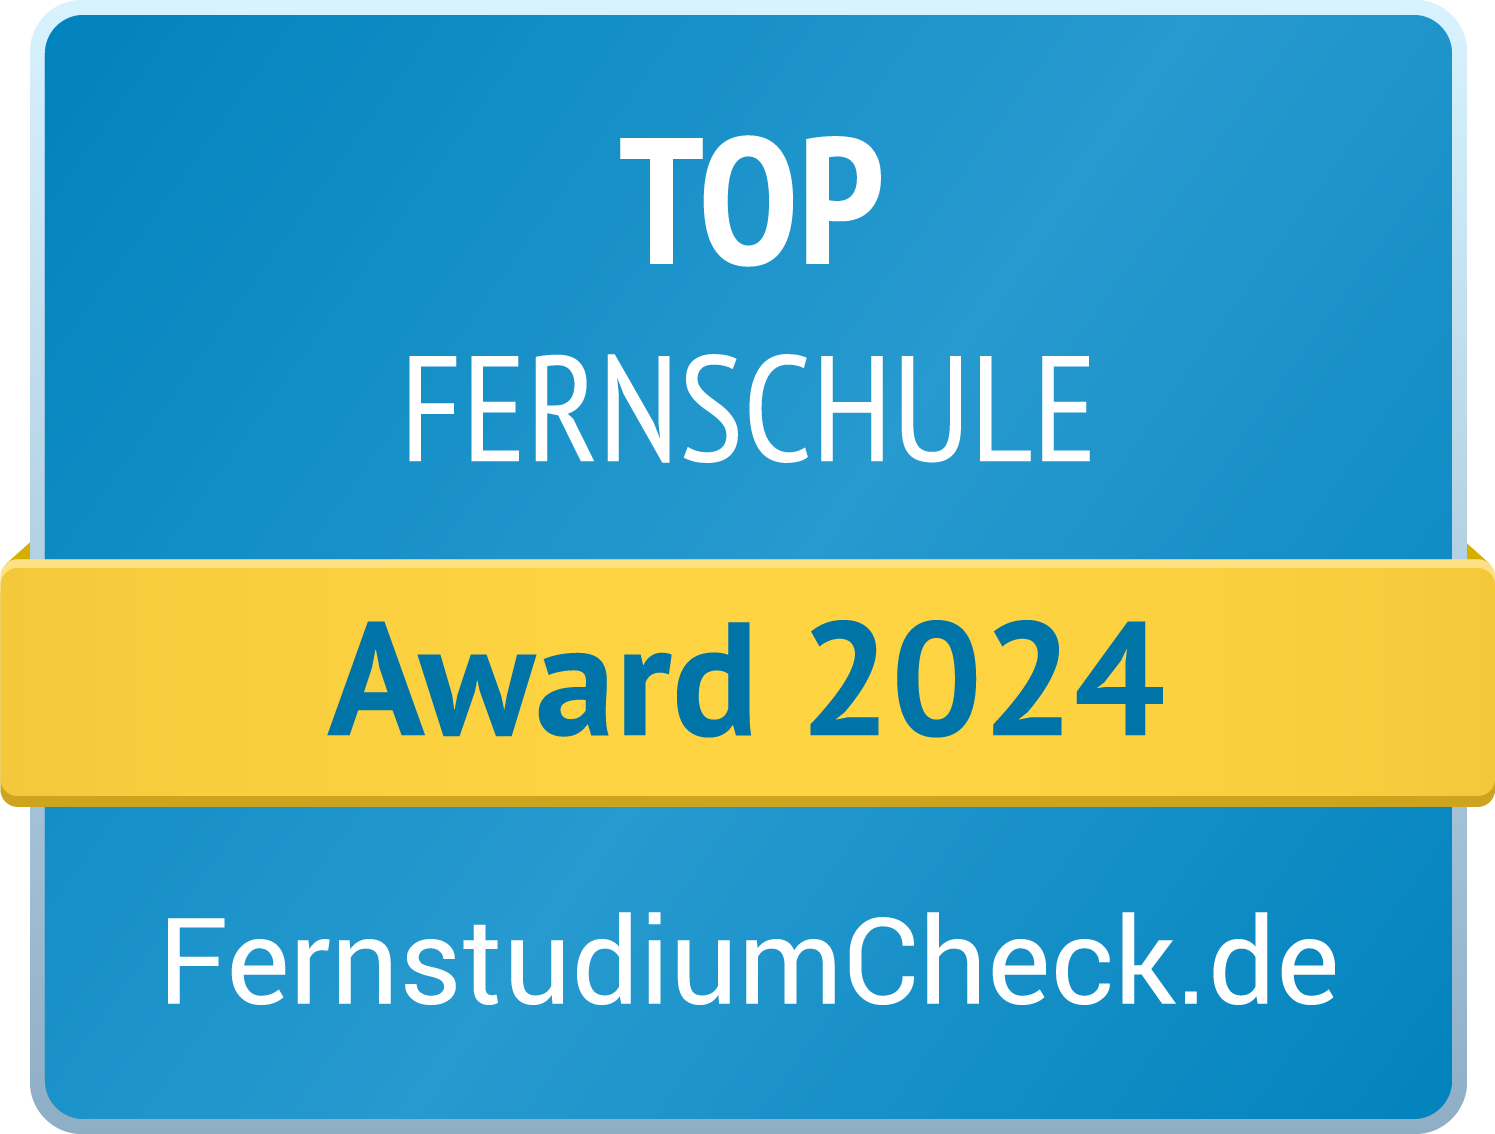 Top Fernschule Award 2022 Fernstudiumcheck.de